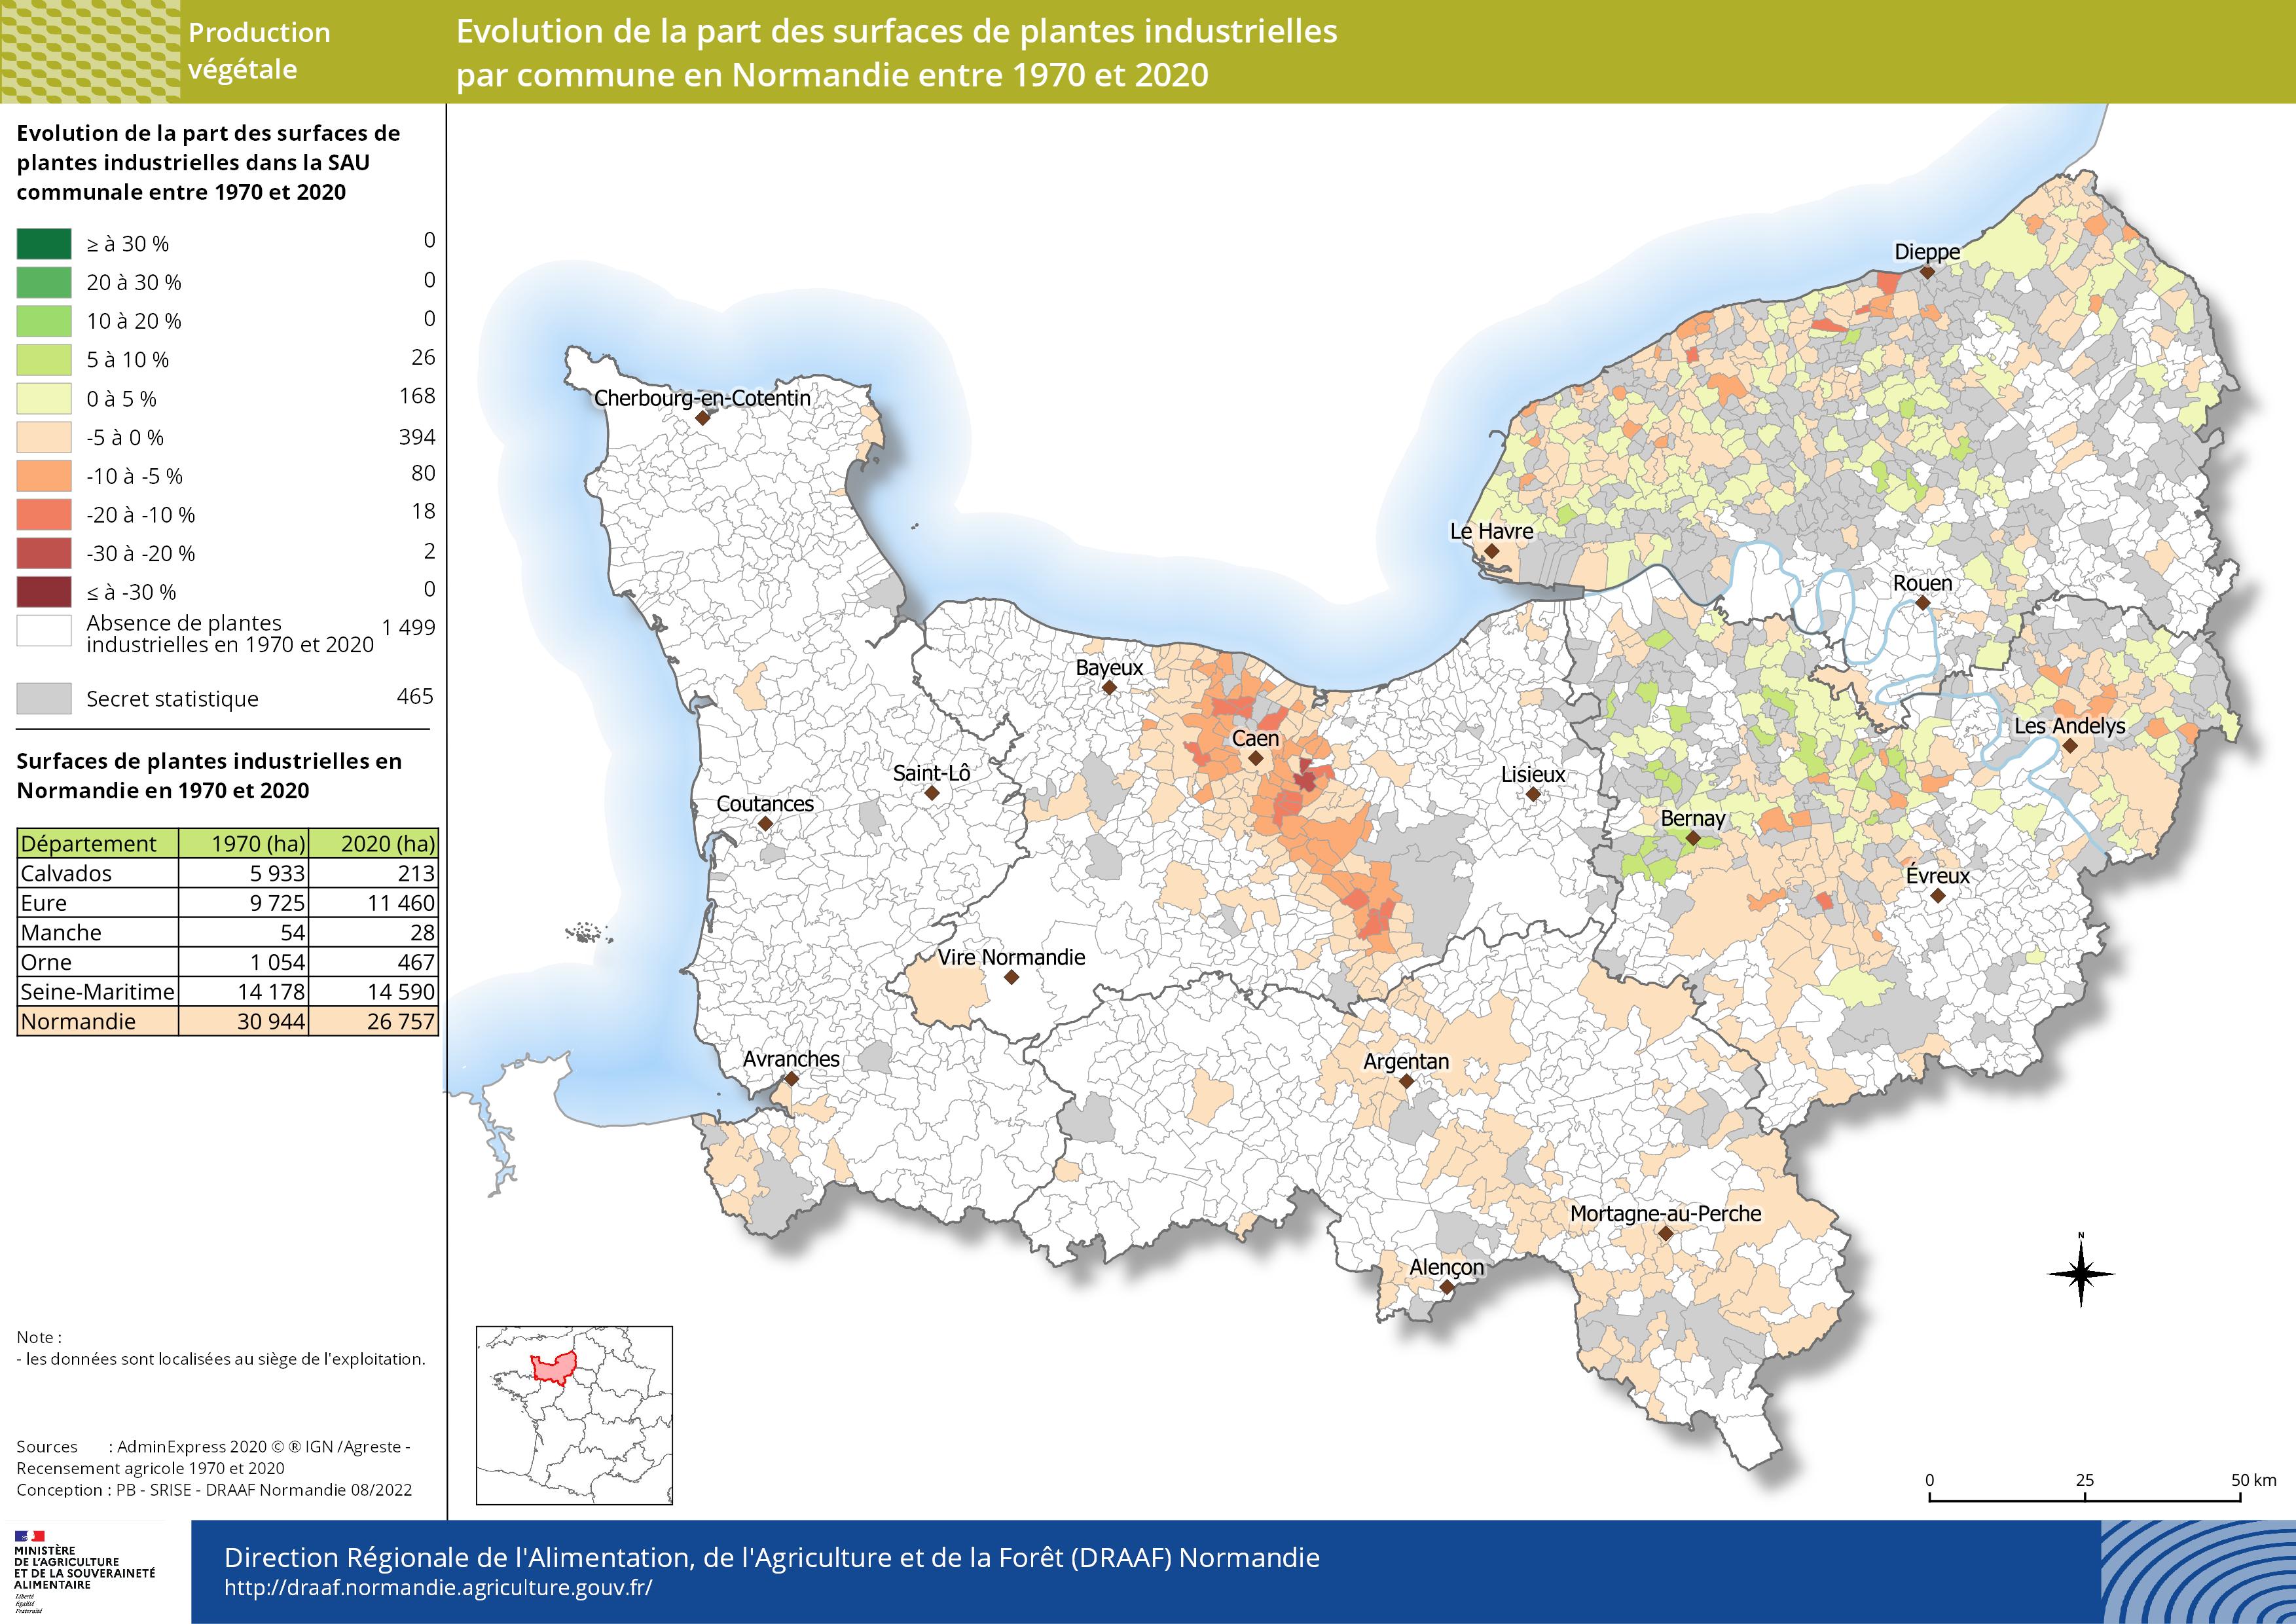 carte représentant l'évolution de la part des surfaces de plantes industrielles par commune en Normandie entre 1970 et 2020